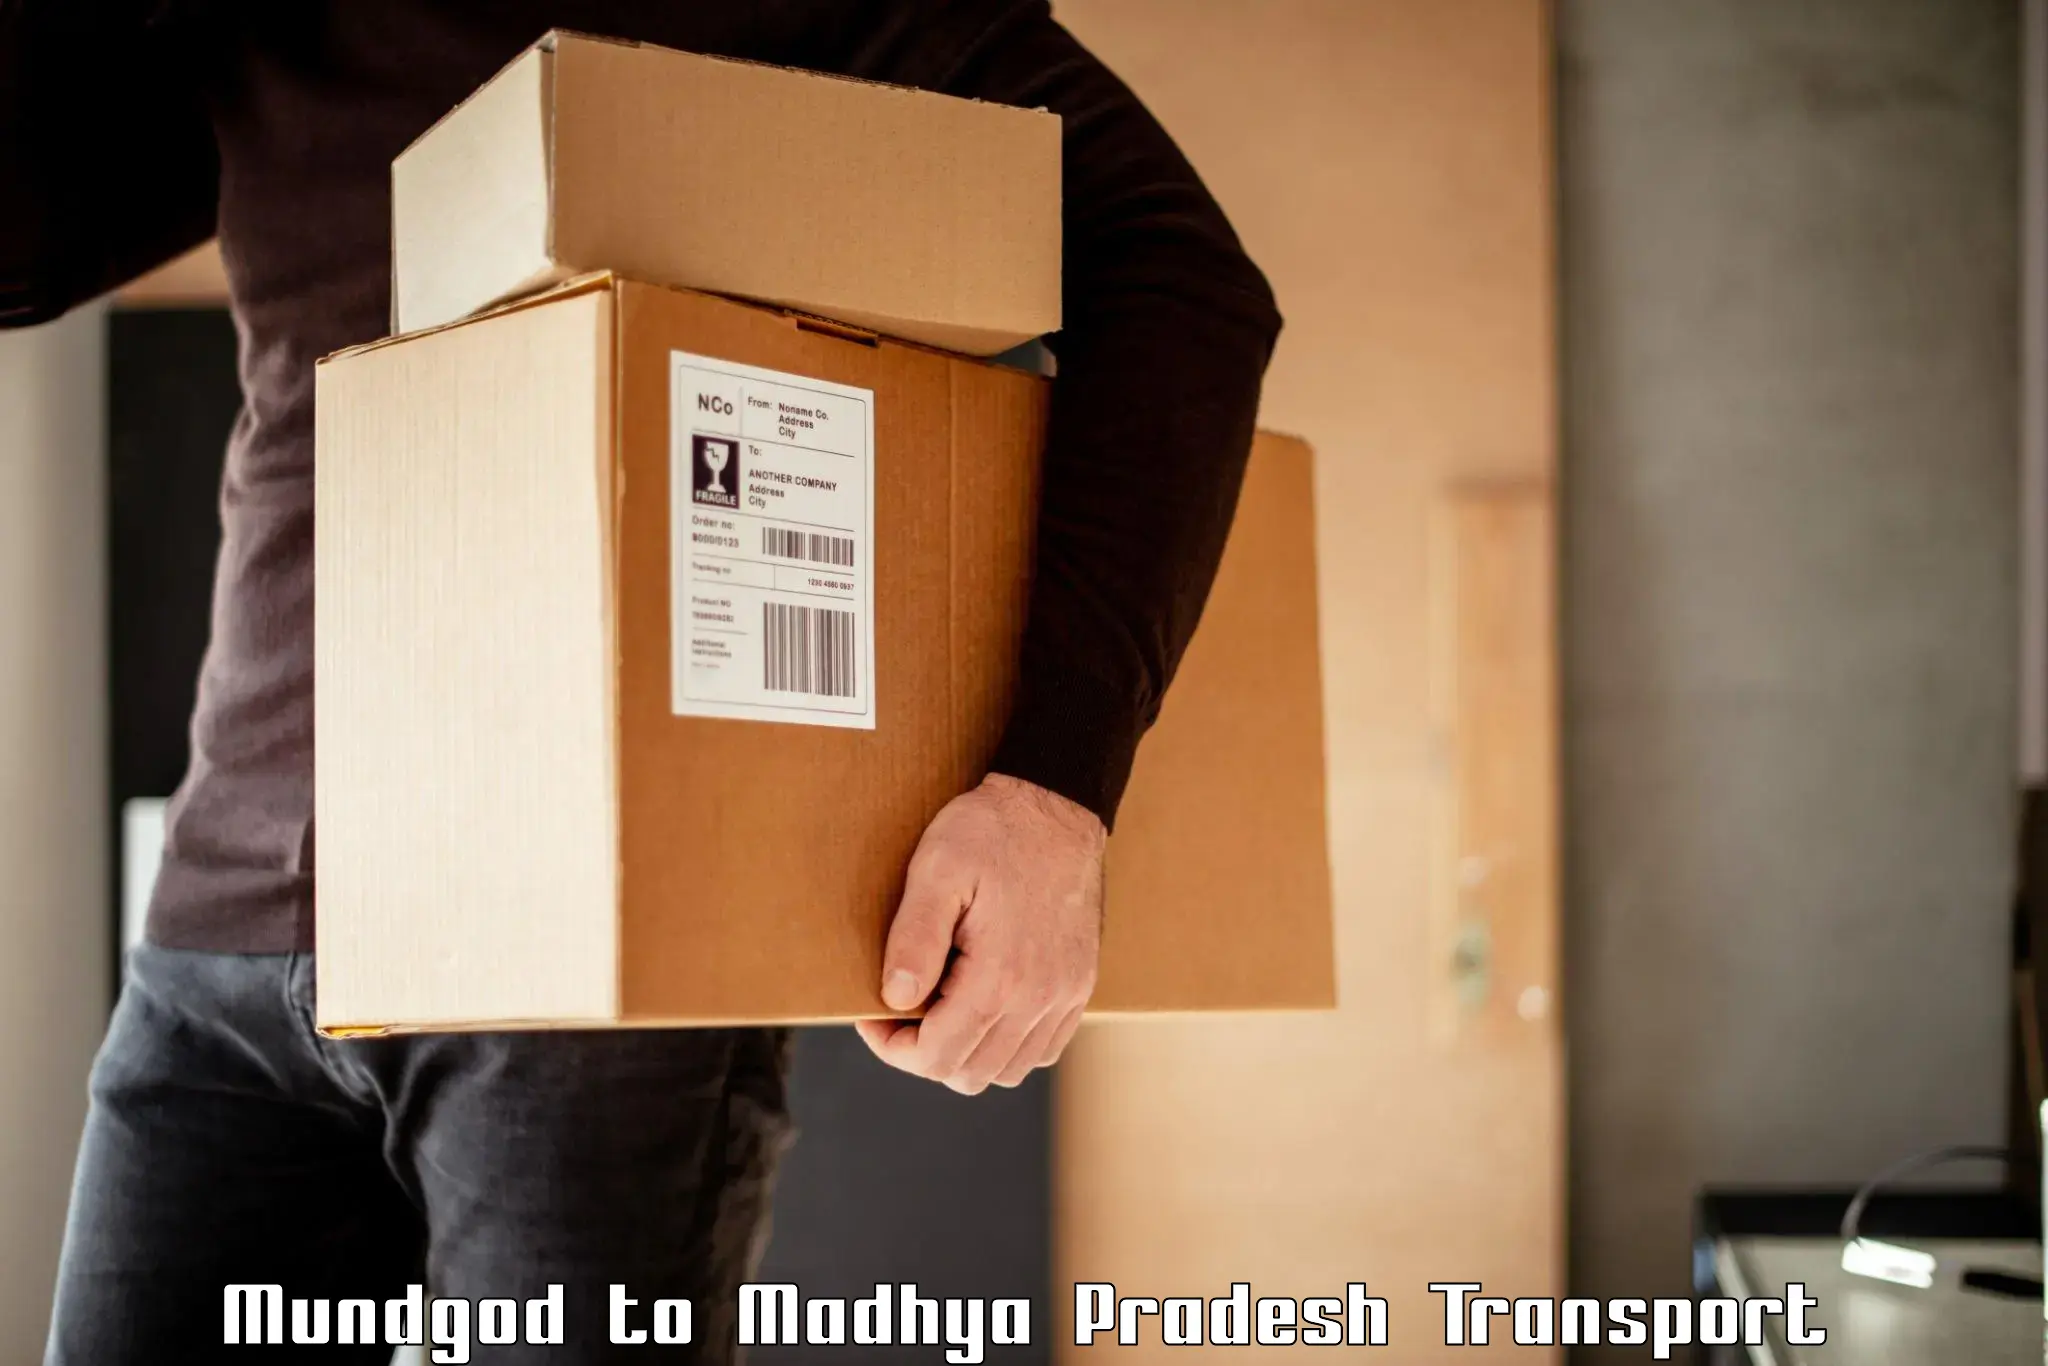 Two wheeler parcel service Mundgod to Sitamau